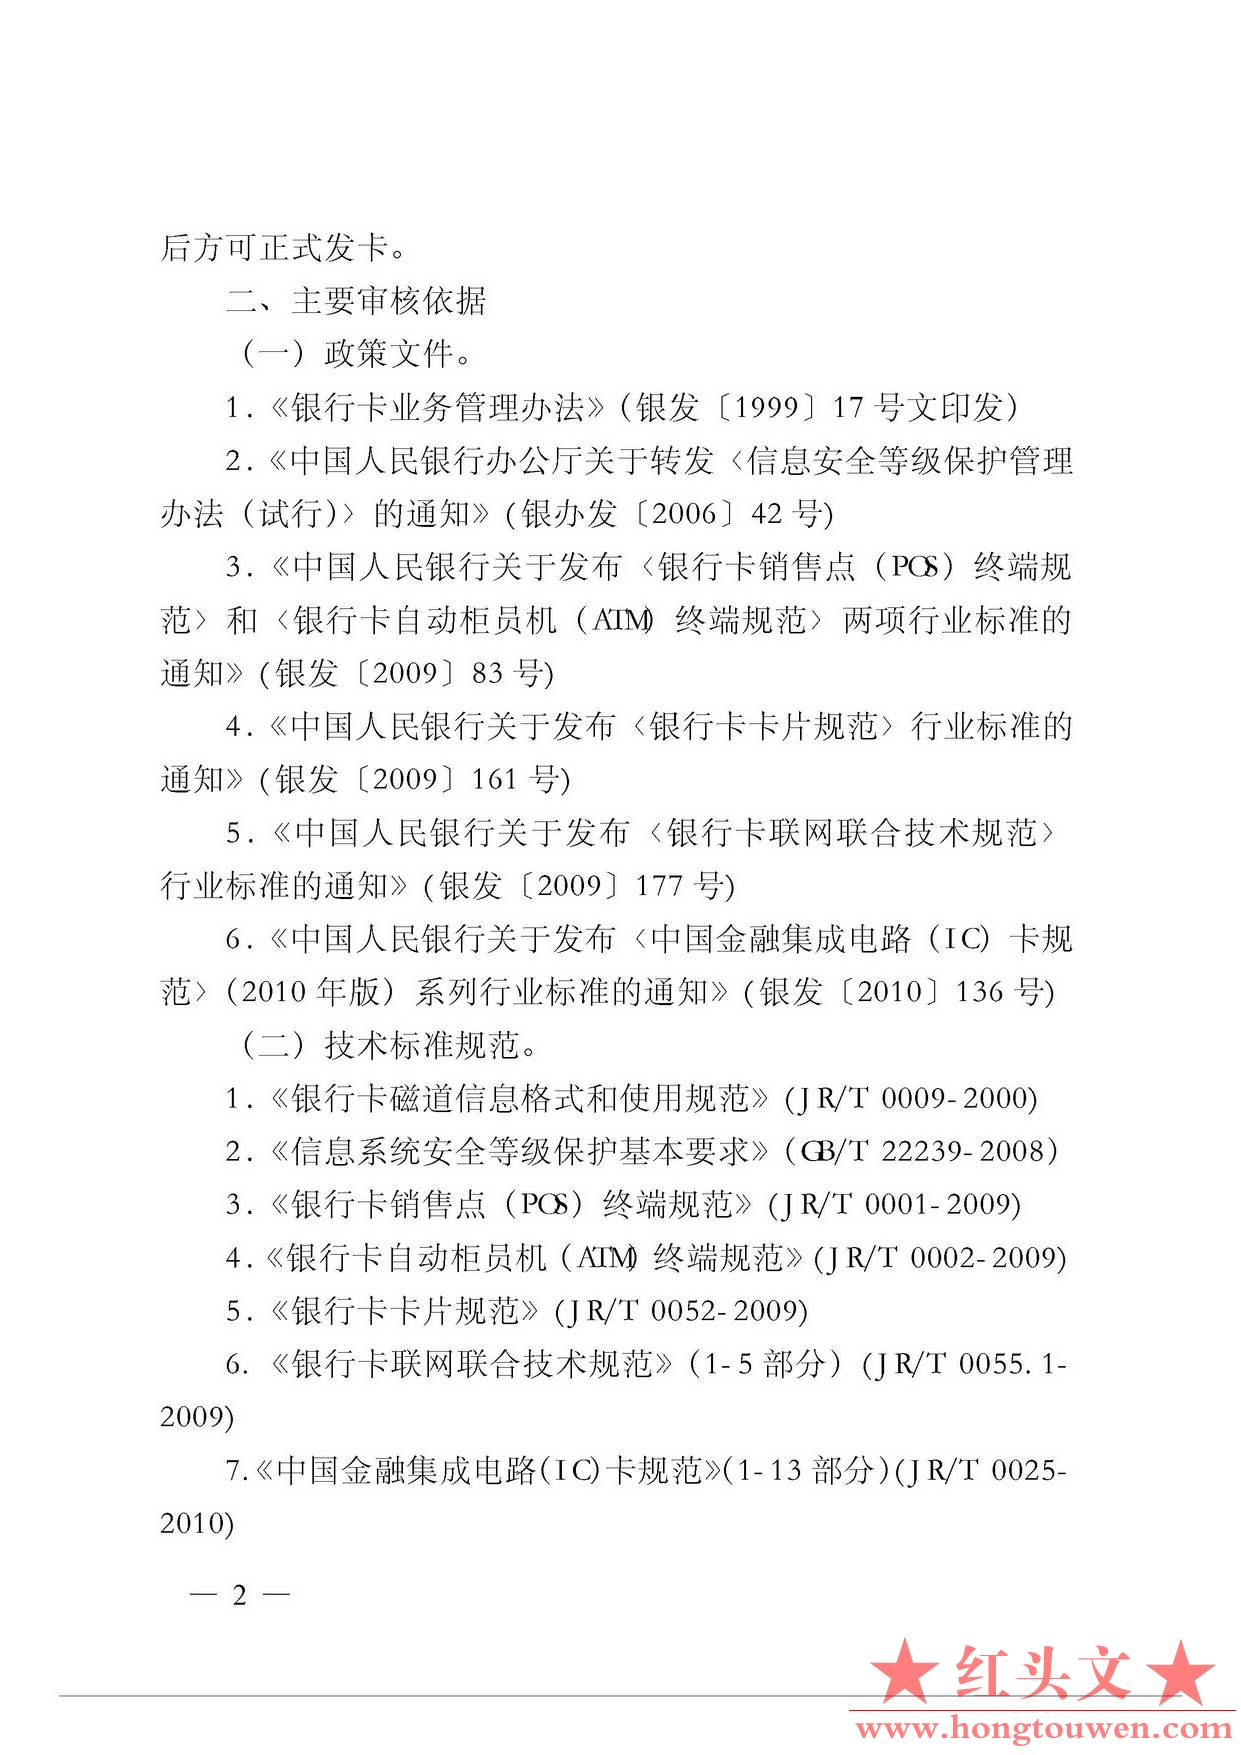 银发[2011]47号-中国人民银行关于进一步规范和加强商业银行银行卡发卡技术管理工作的.jpg